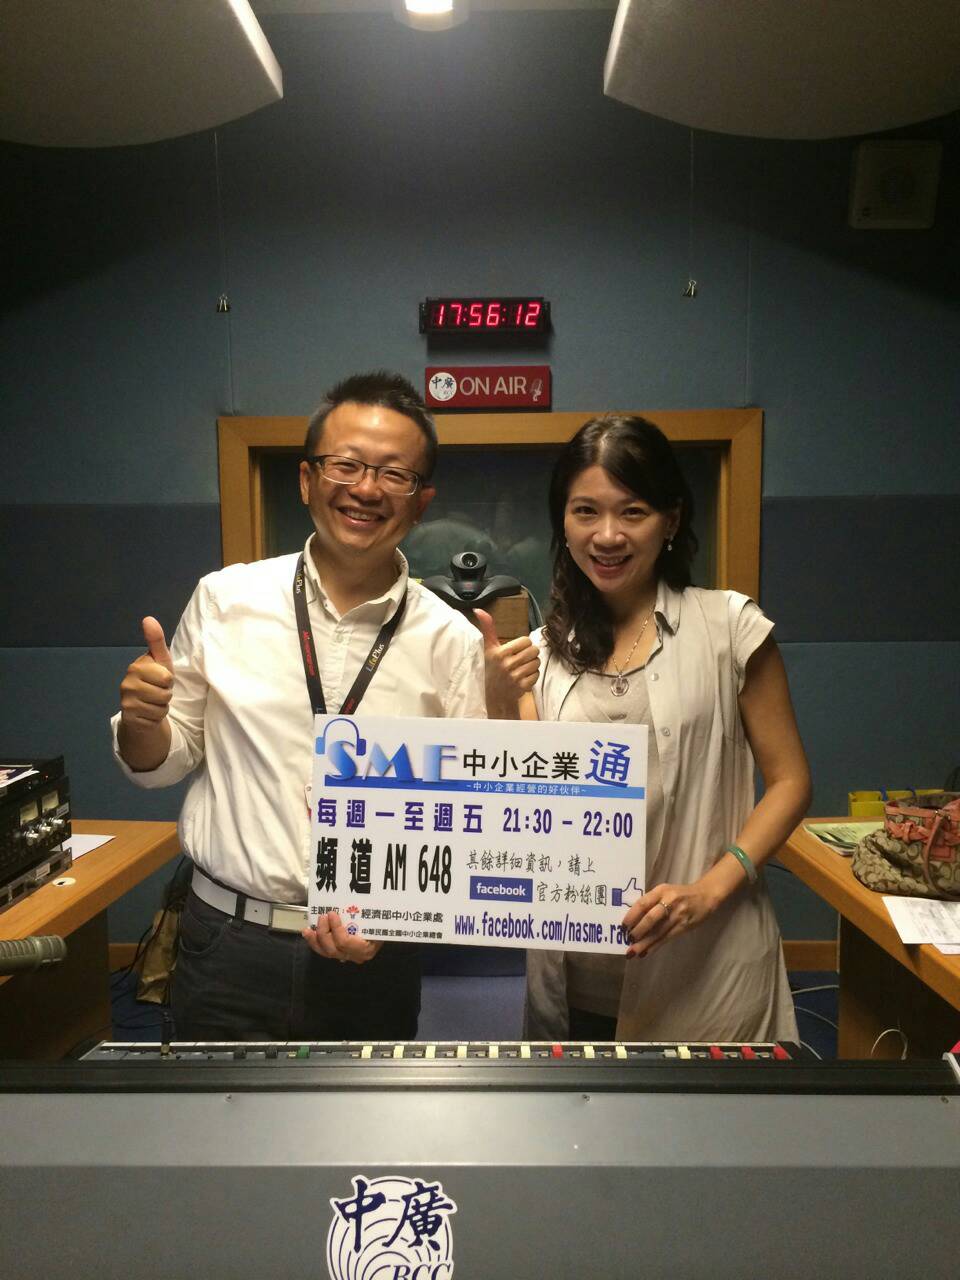 圖左微程式總經理吳騰彥與圖右中廣新聞主持人合照